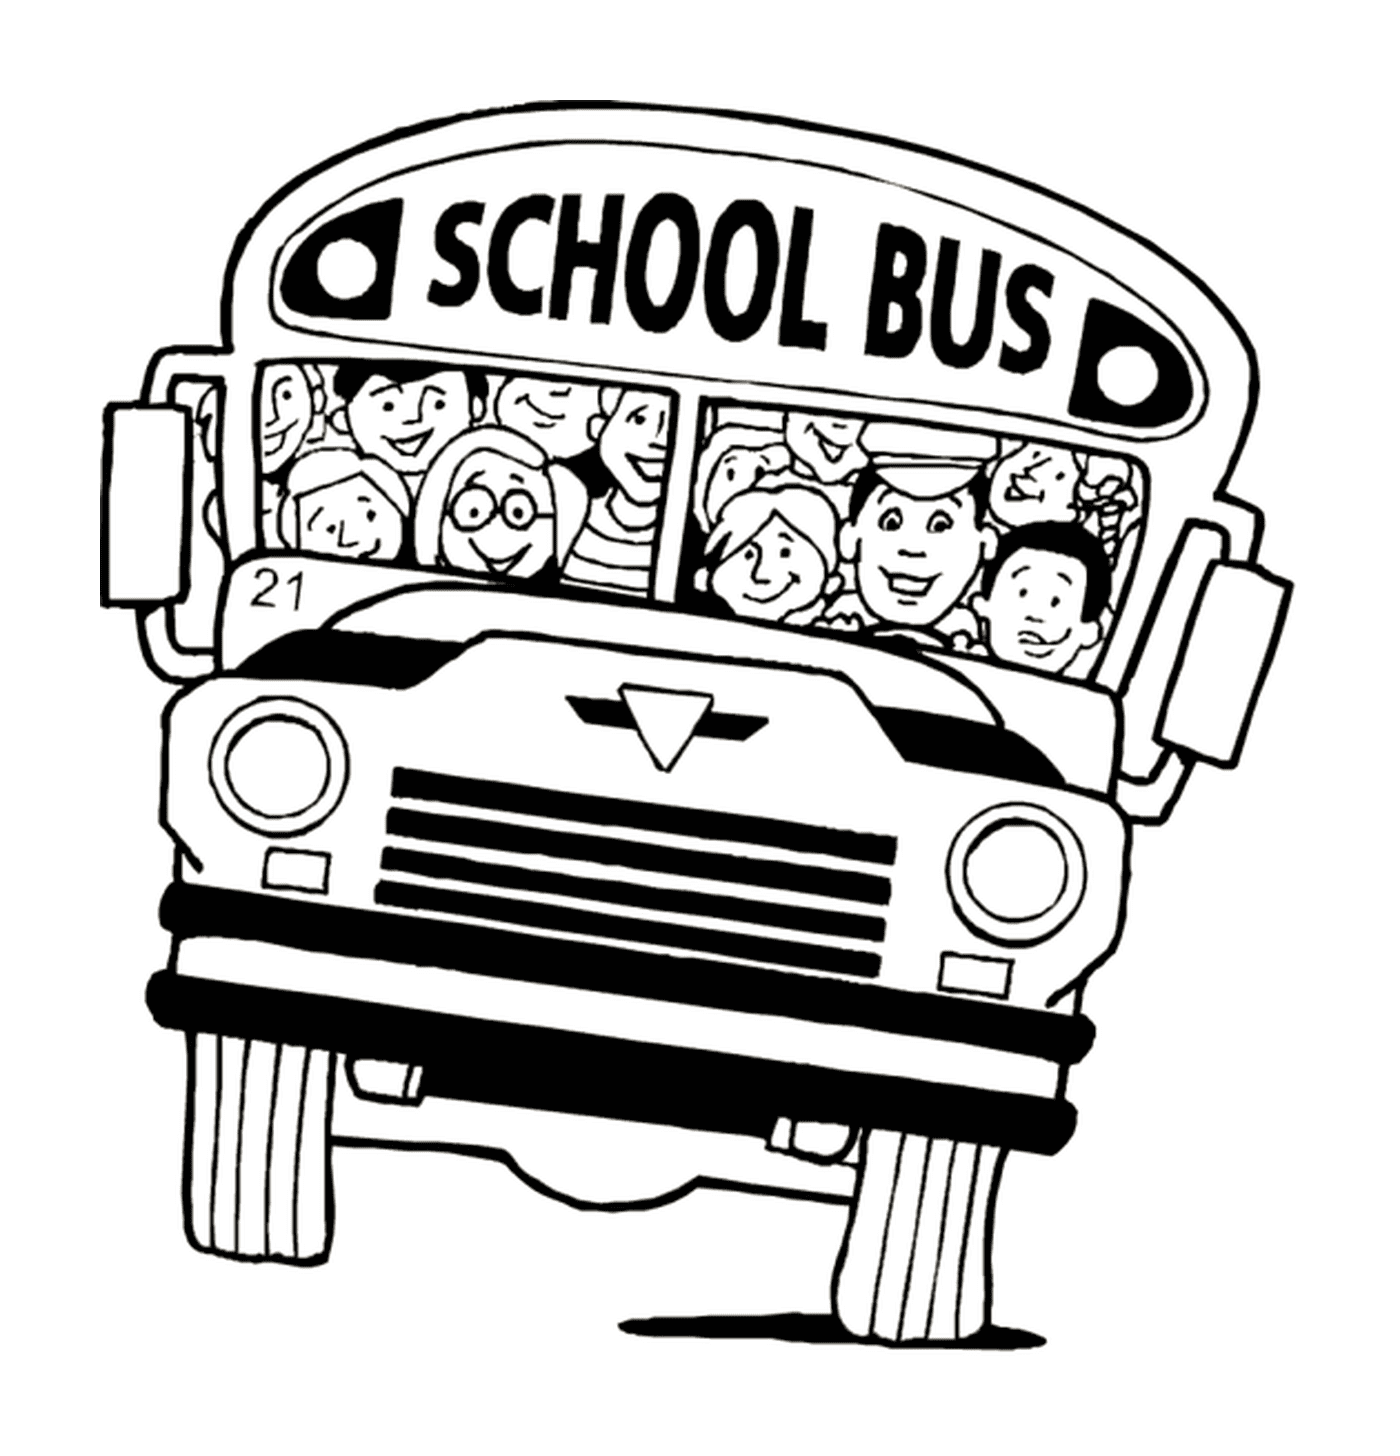  A school bus 